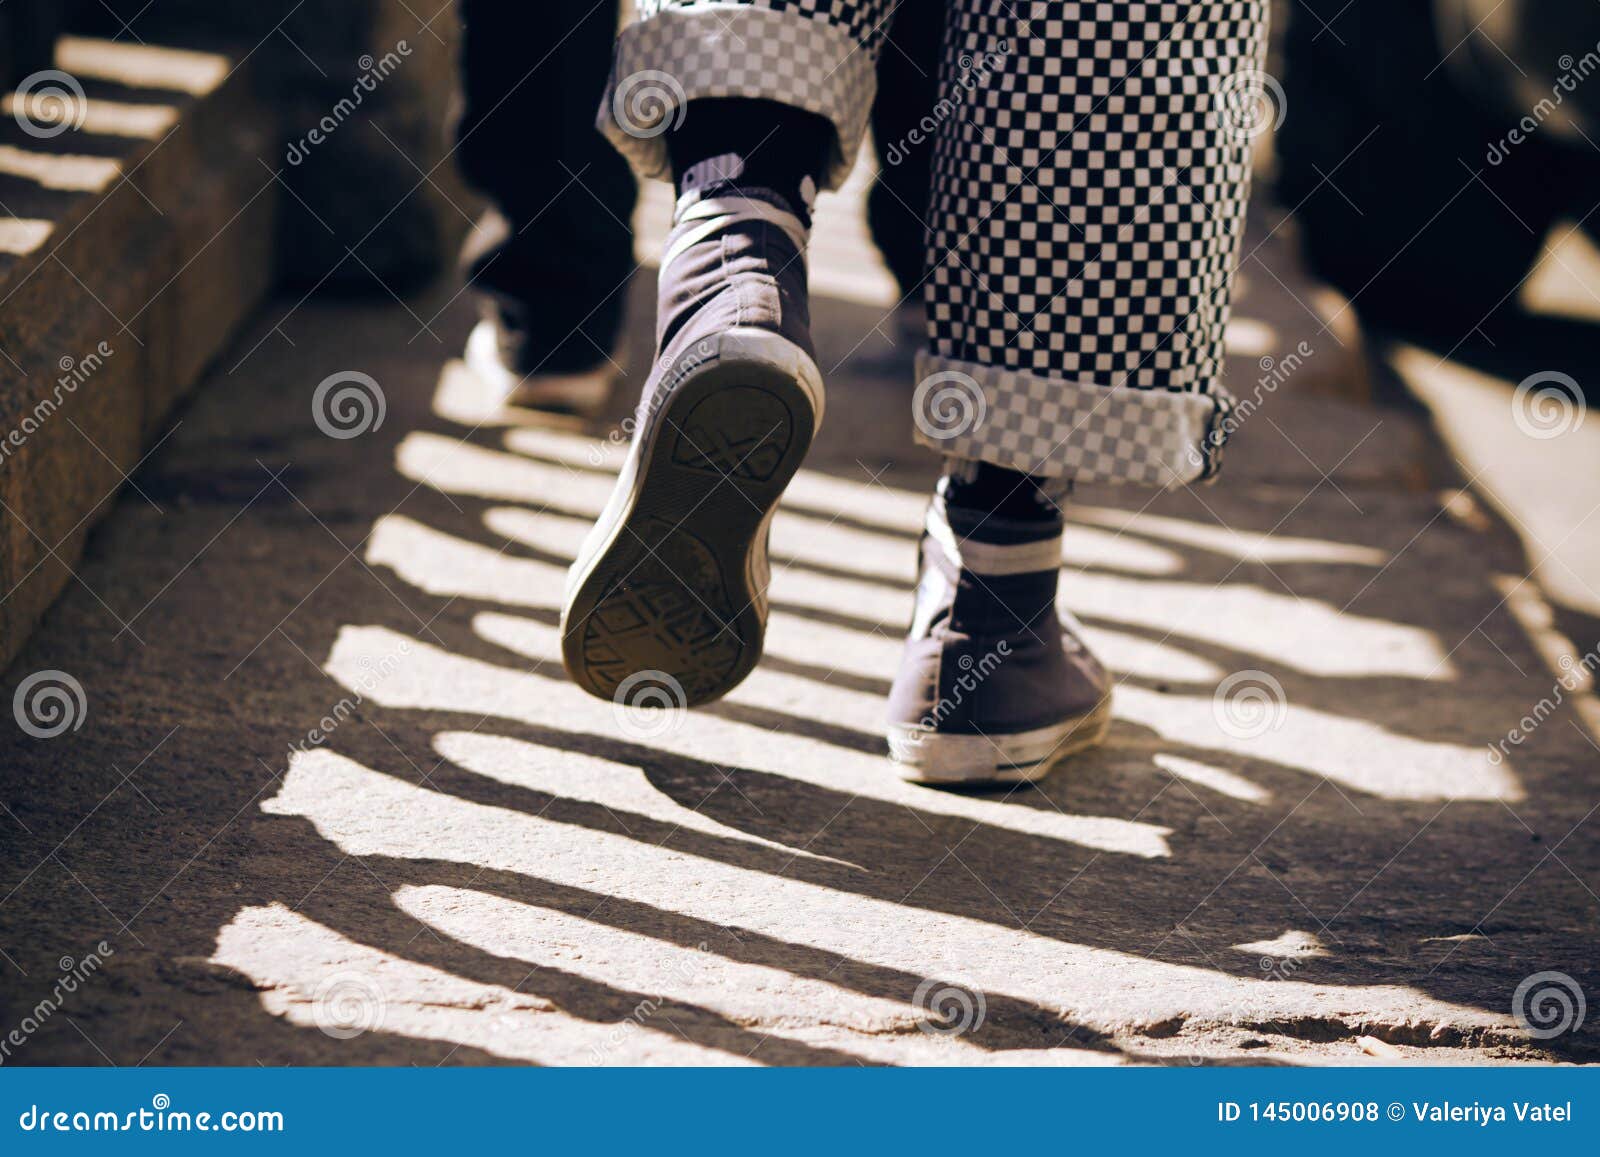 Un Hombre En Zapatillas De Deporte Y Pantalones De Tela Escocesa Que Camina En El Pavimento Foto De Archivo Imagen De Deporte Zapatillas 145006908